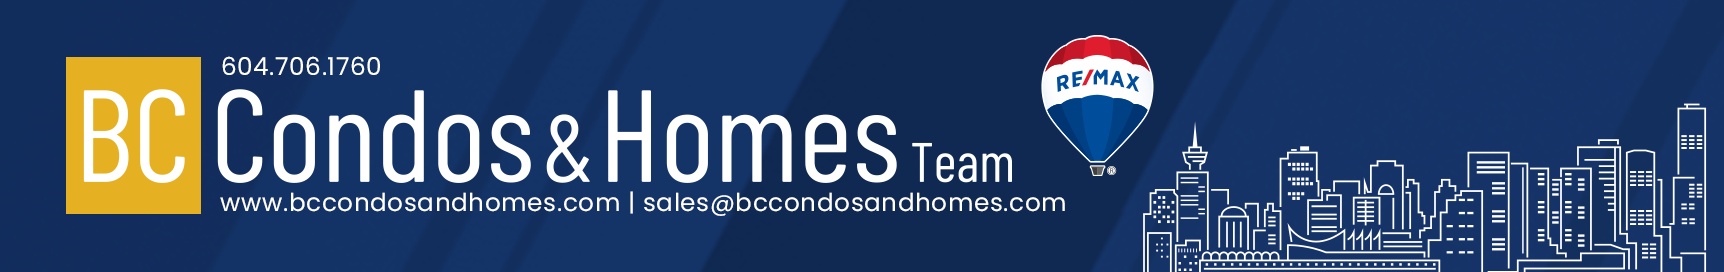 BC Condos and Homes Team